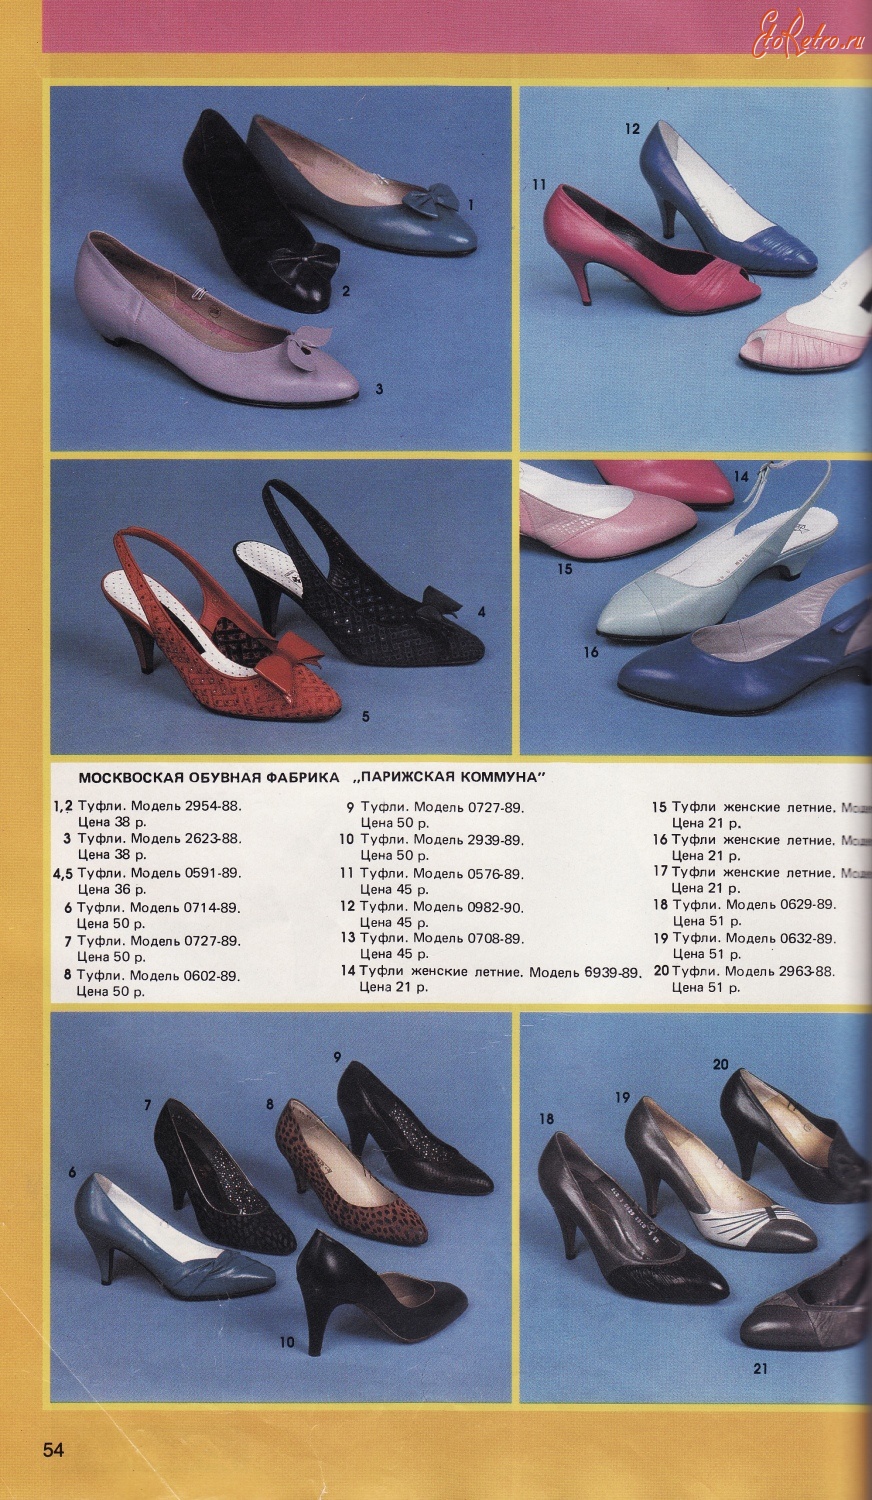 Ретро мода - Обувь 1989-90г.